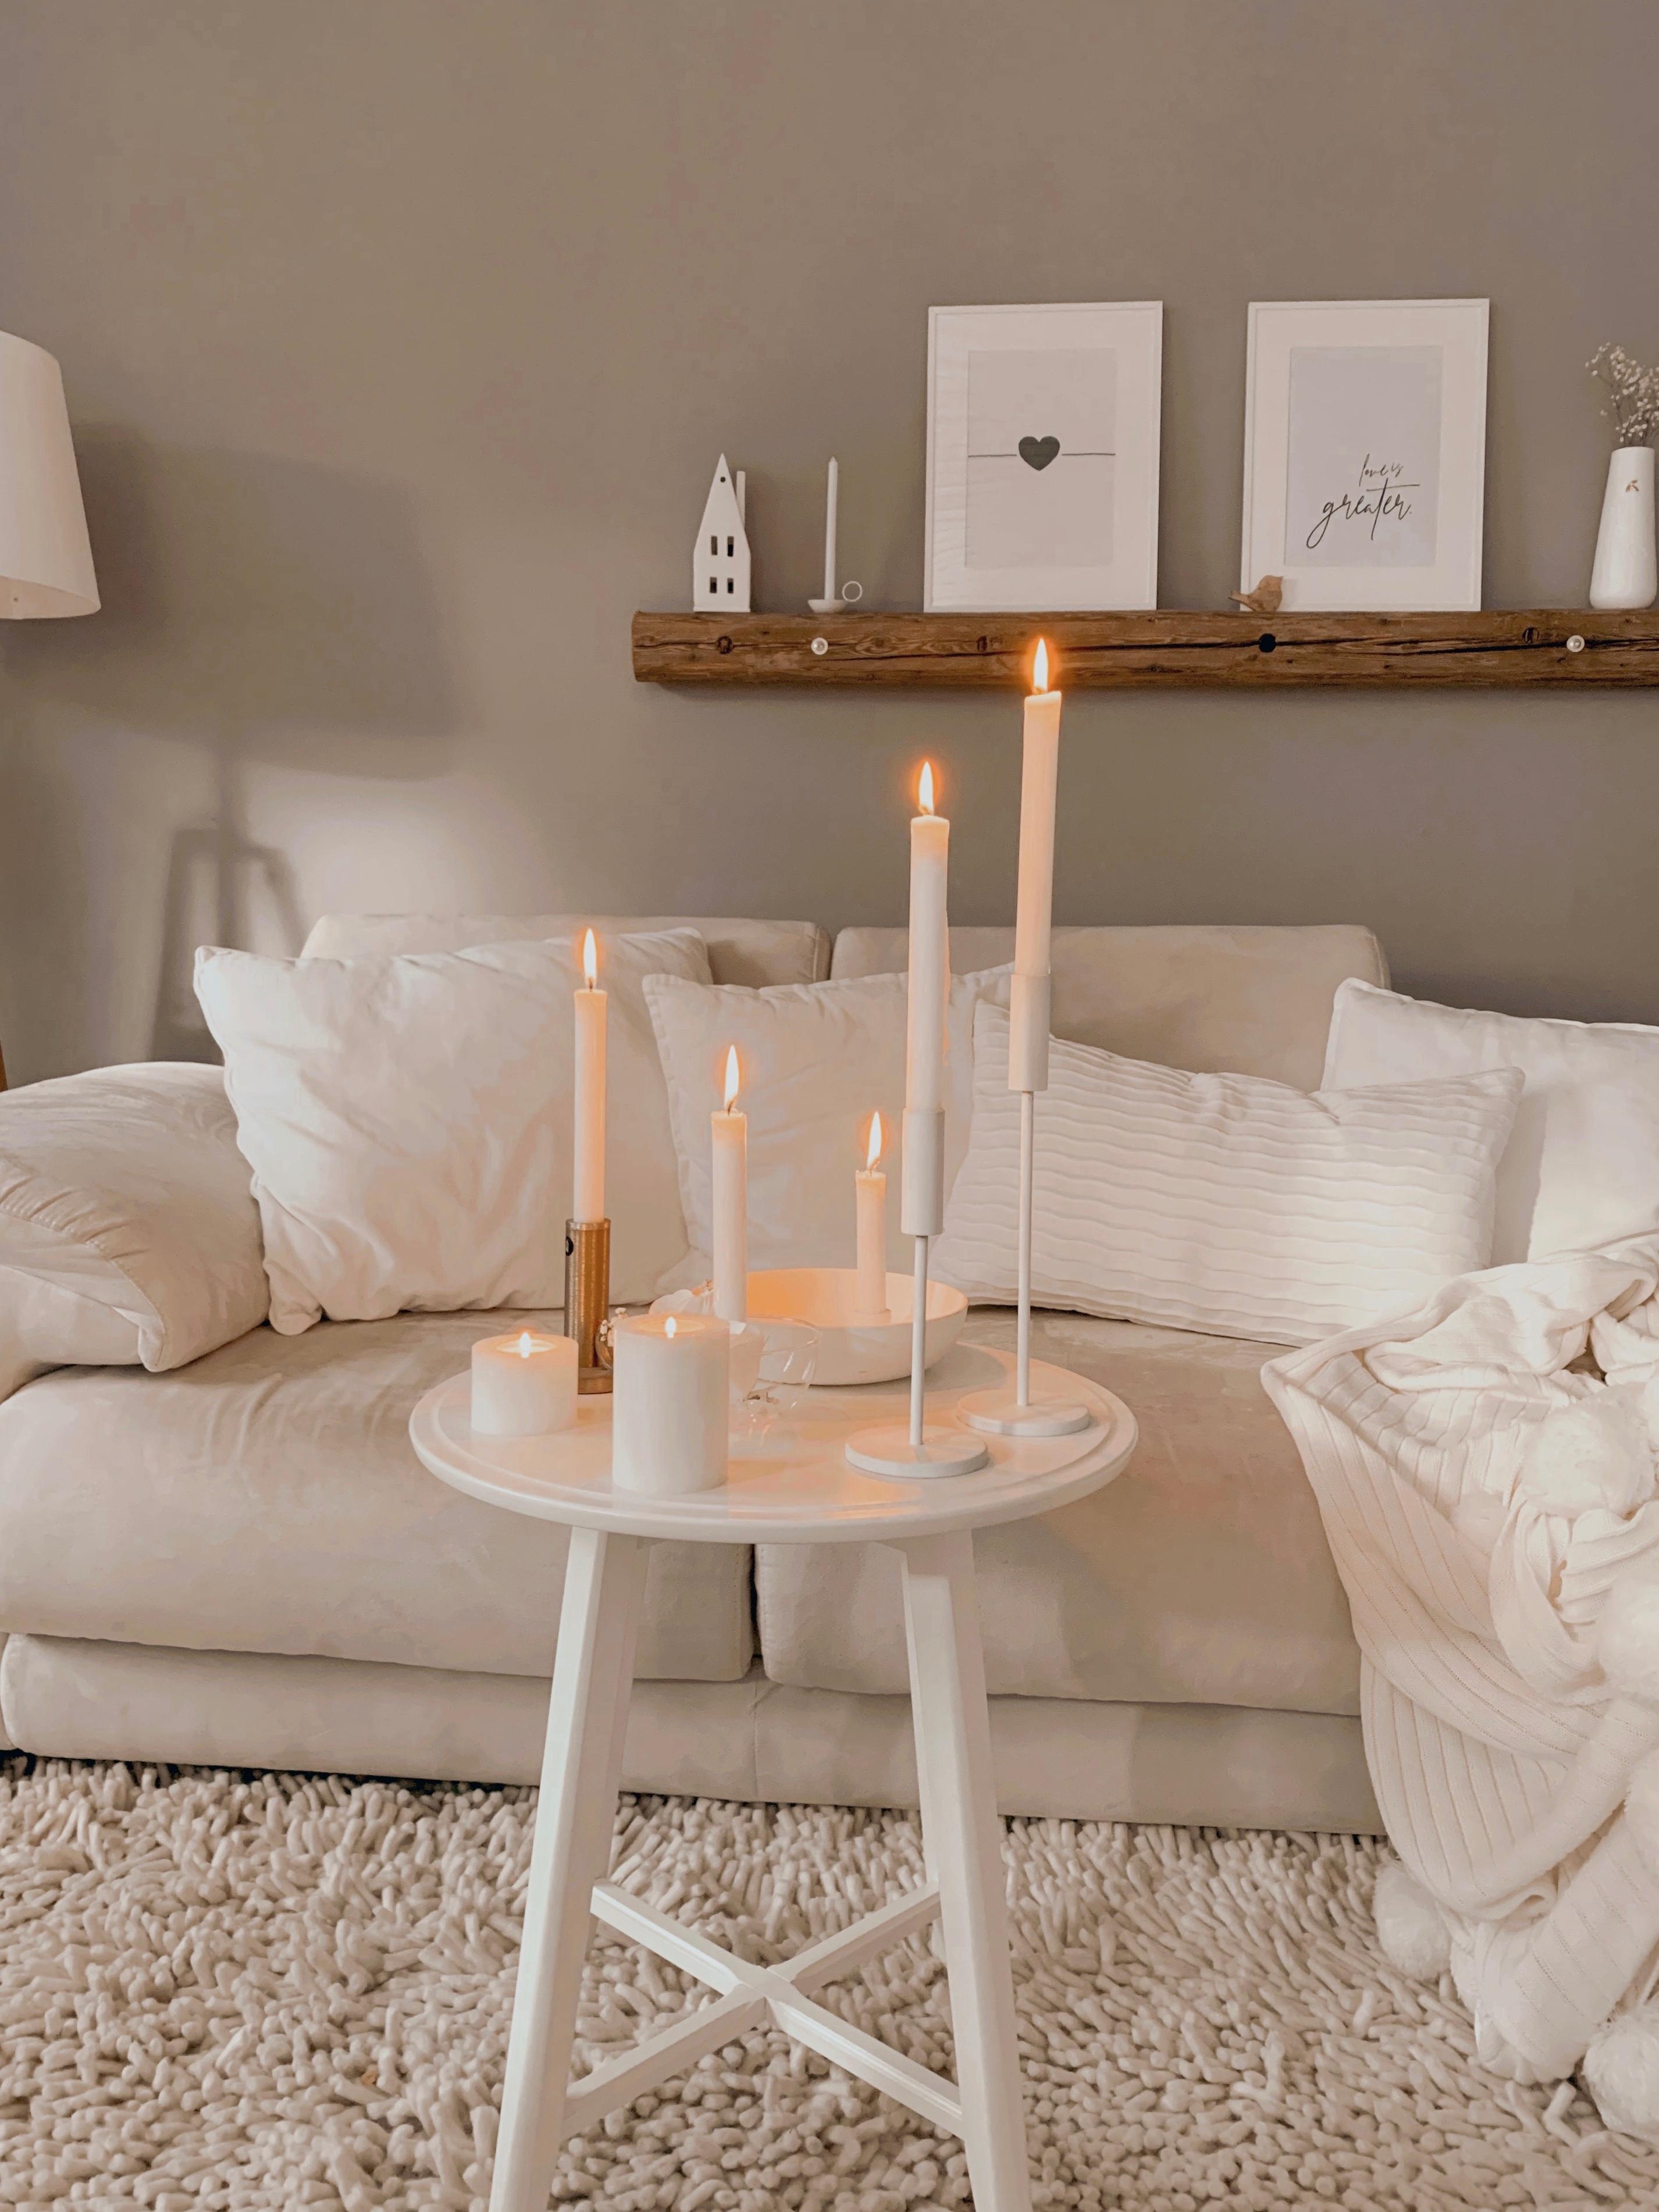 Ein kuschliges Wichenende mit Kerzen, Kissen und Decken #cozyhome#couchstyle#zuhause#cozyliving